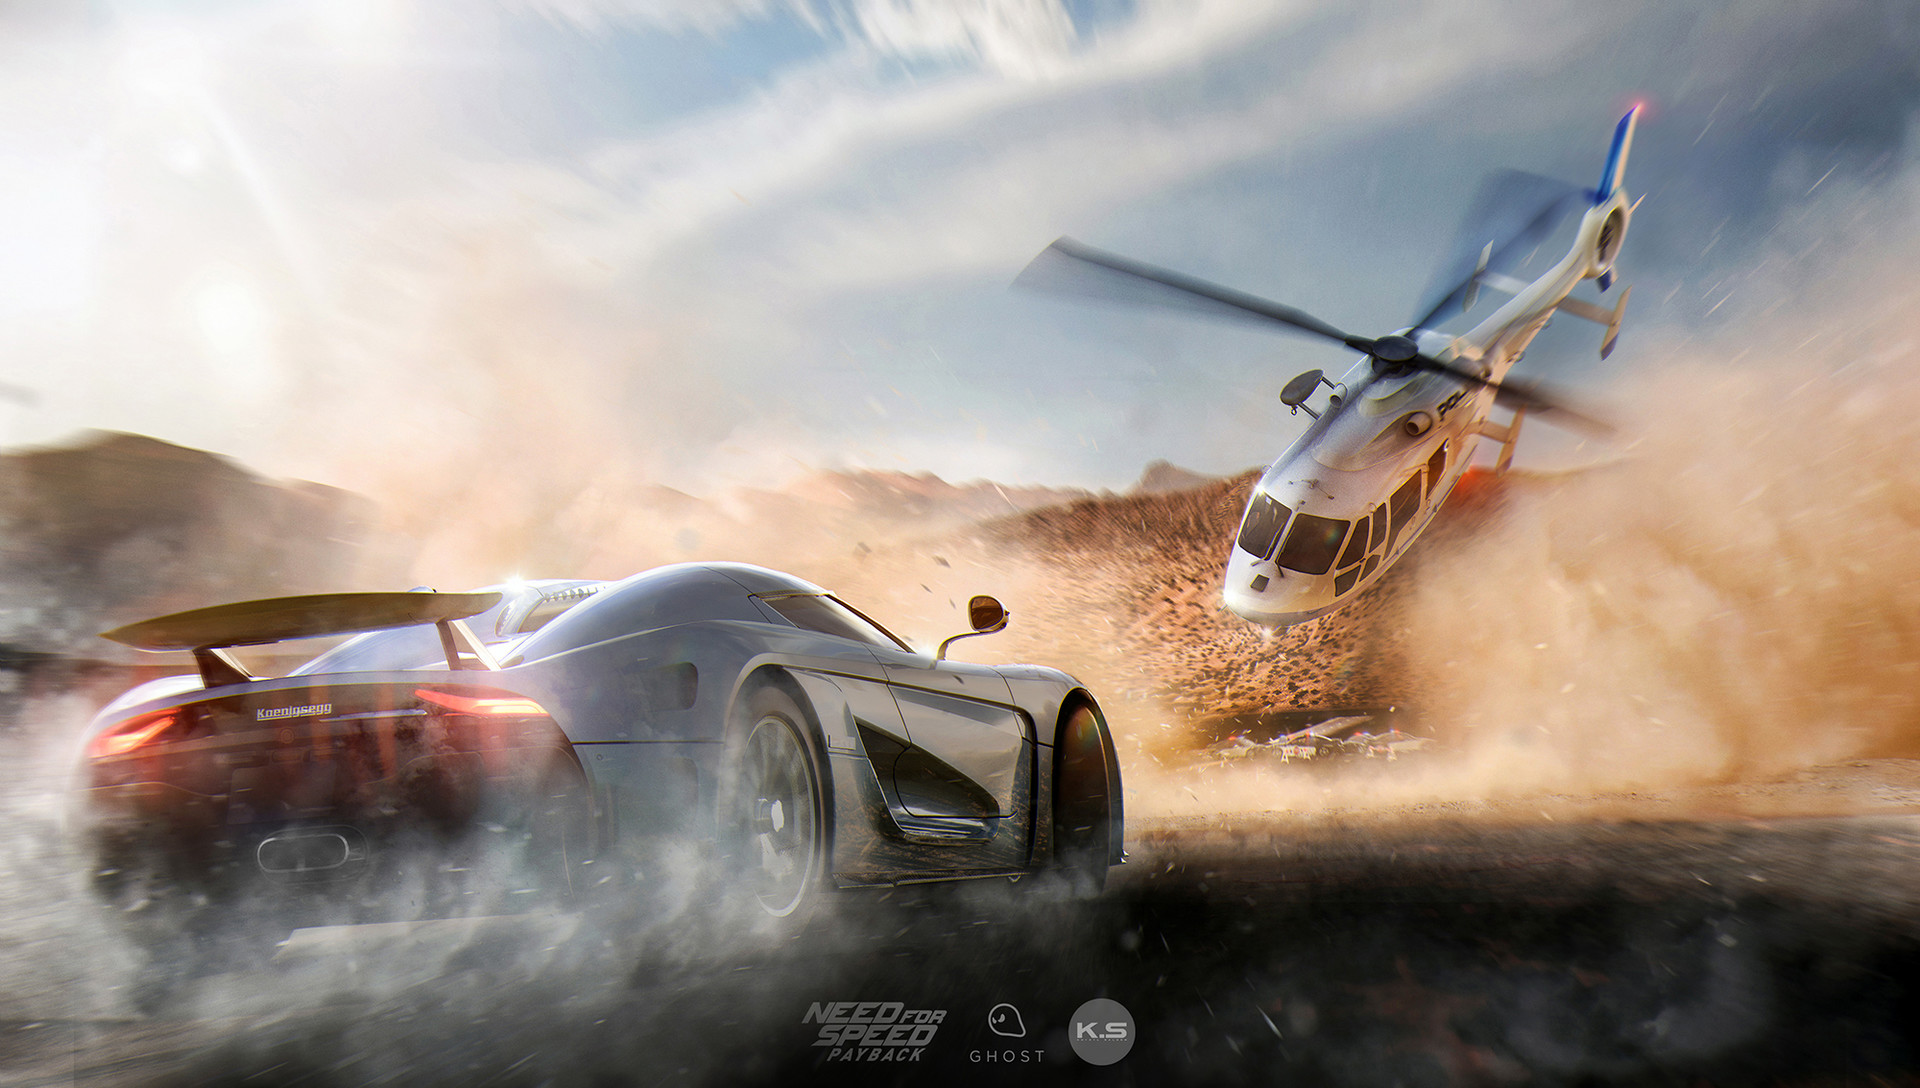 Фото Koenigsegg Agera, машины, need for speed payback, Need for Speed, игры, Игры 2017, художник, абстракция, произведение искусства - бесплатные картинки на Fonwall